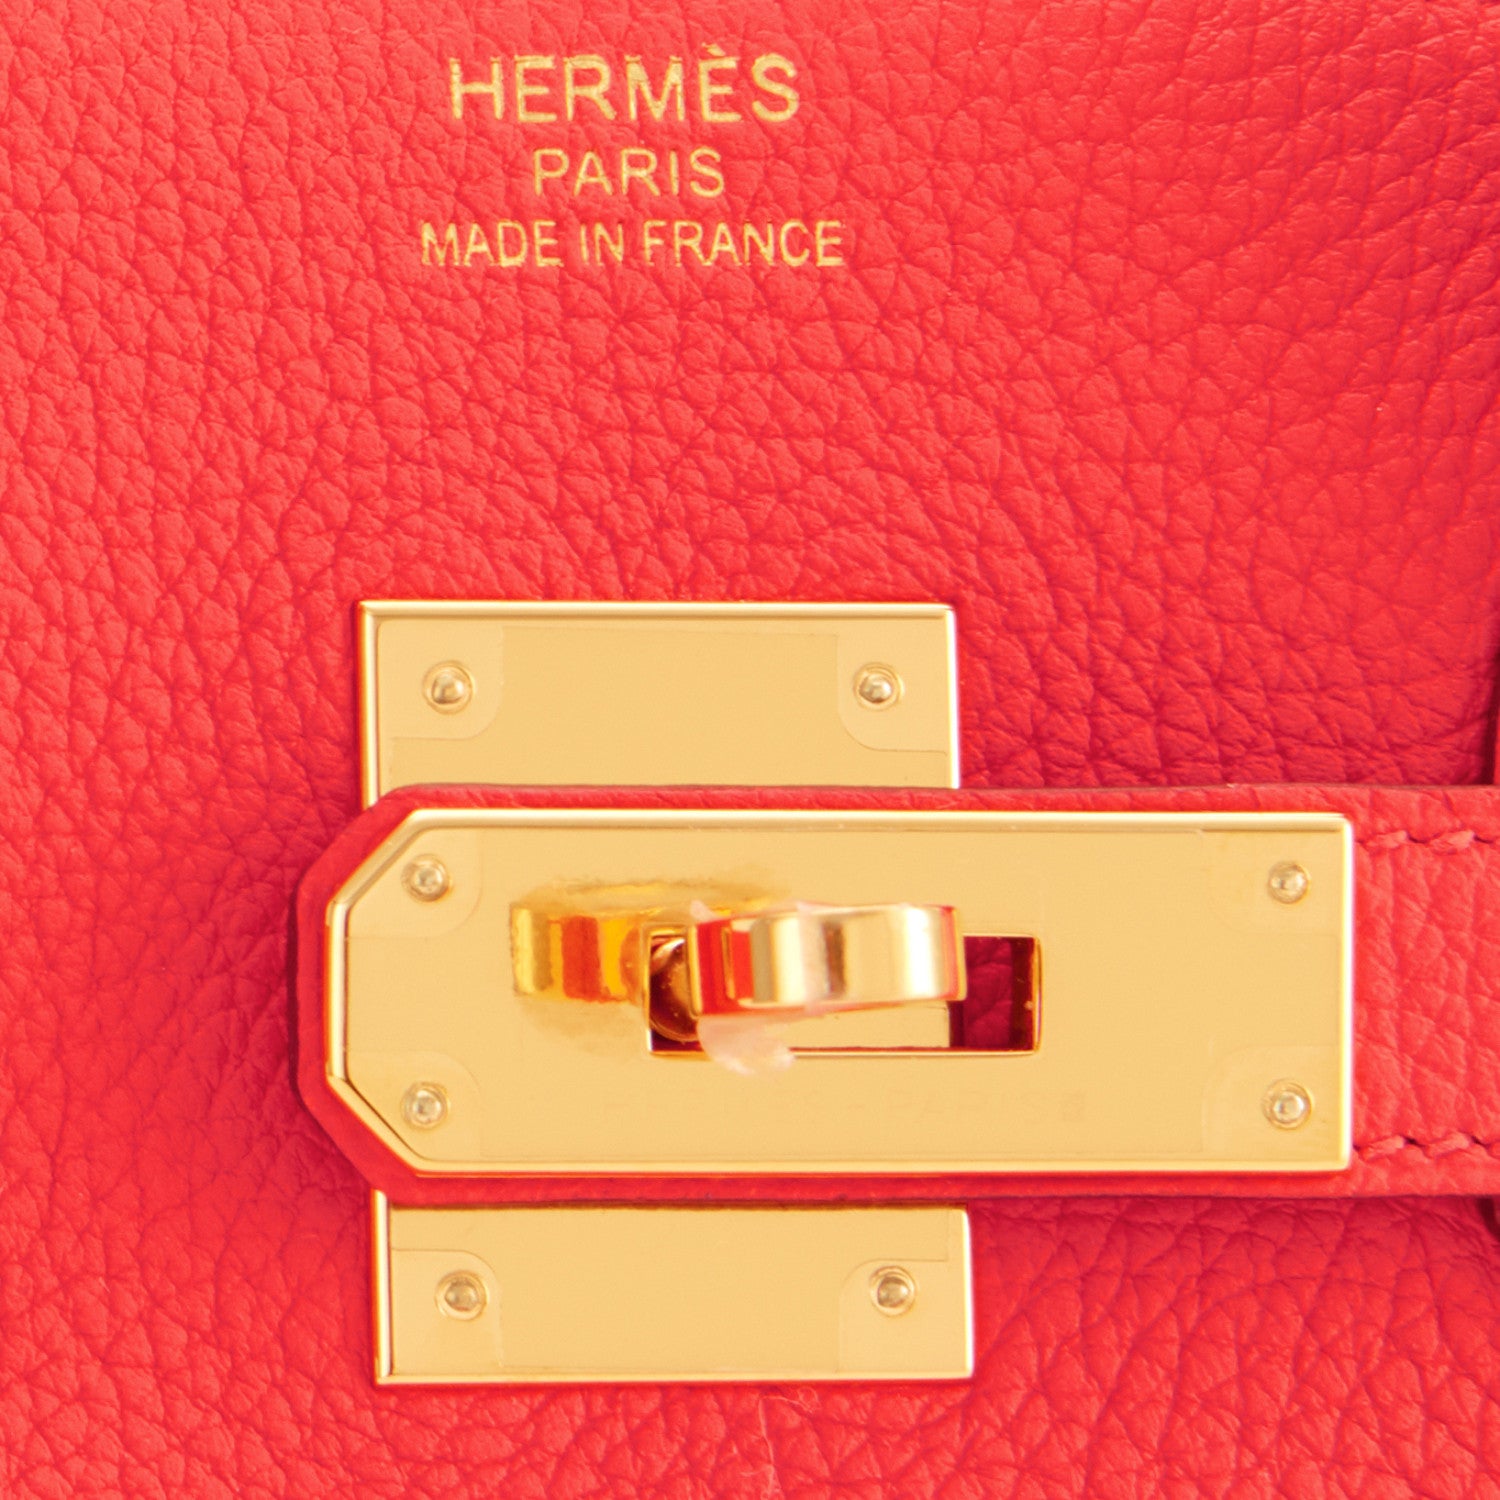 Hermes Birkin Bag, Capucine, 35cm, Togo With Gold